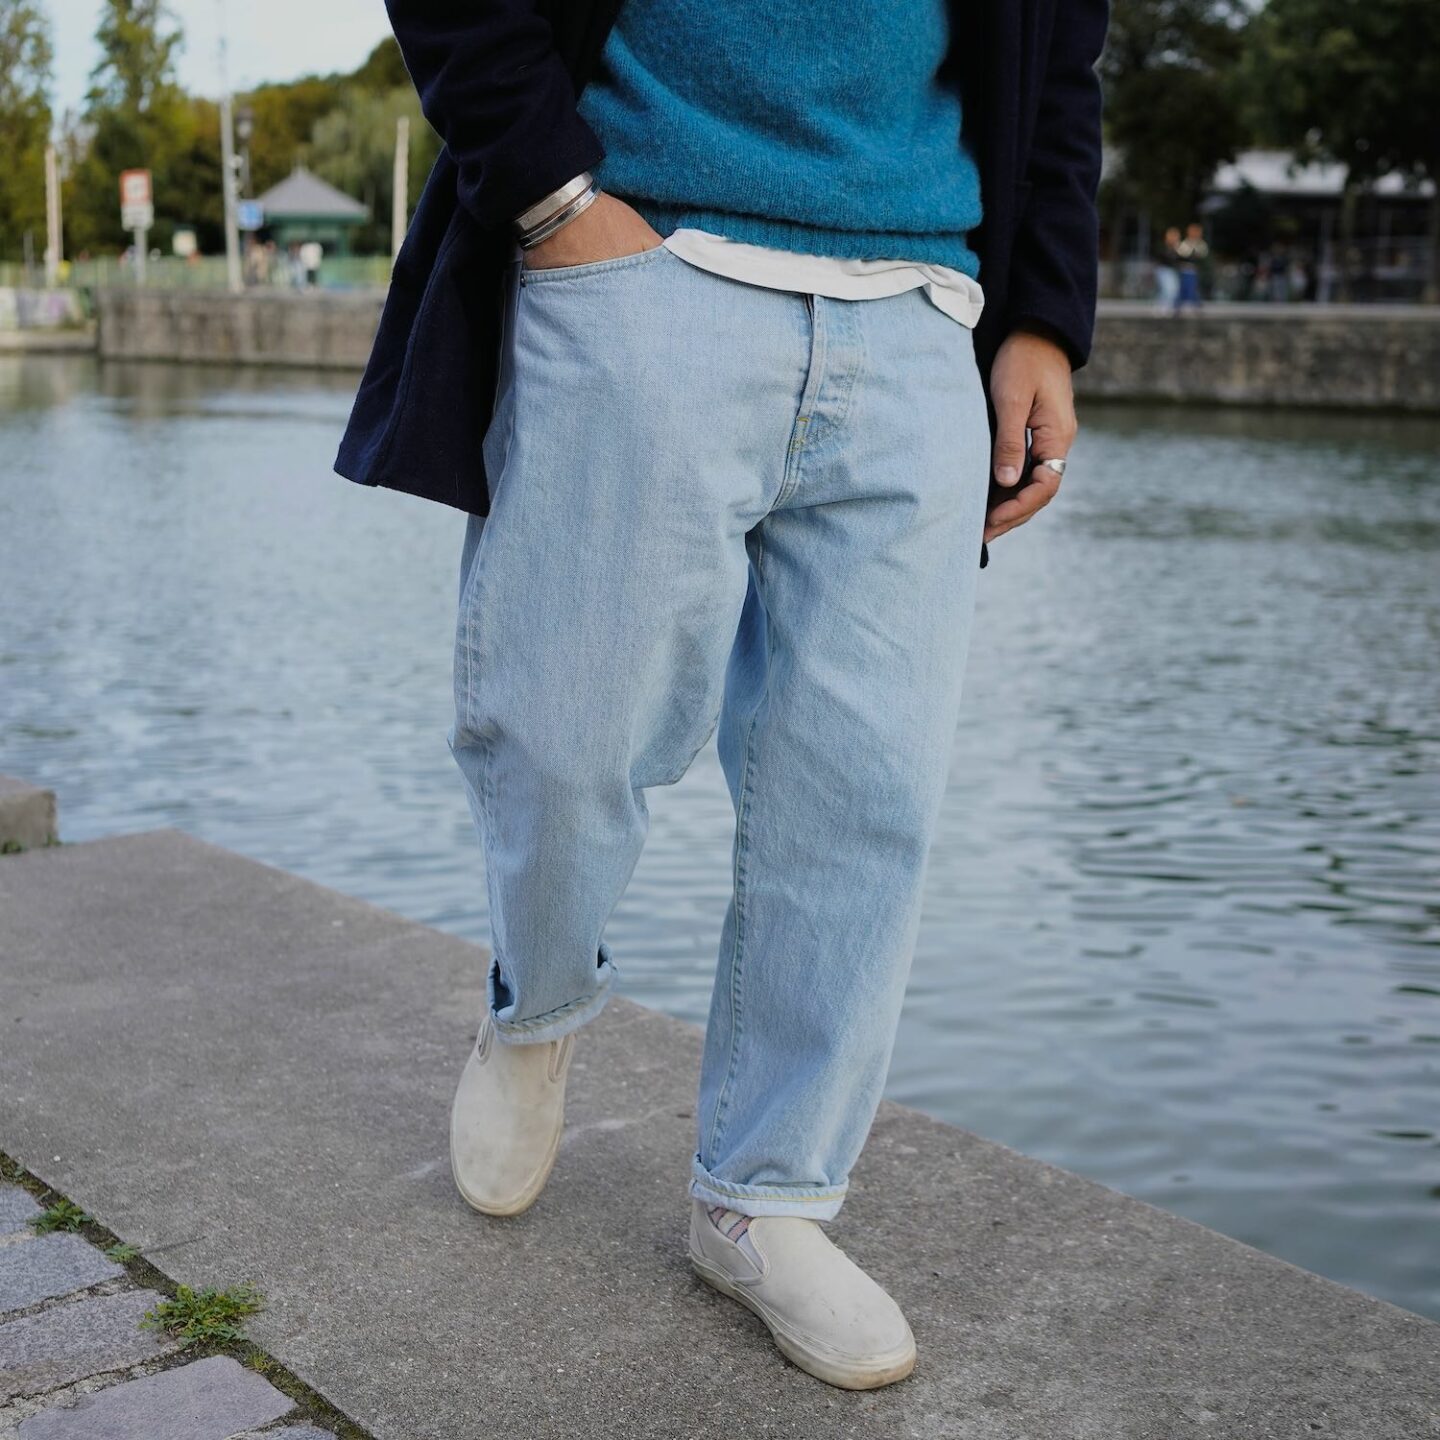 Borali une marque de jean taille haute pour homme avec une coupe loose tapered